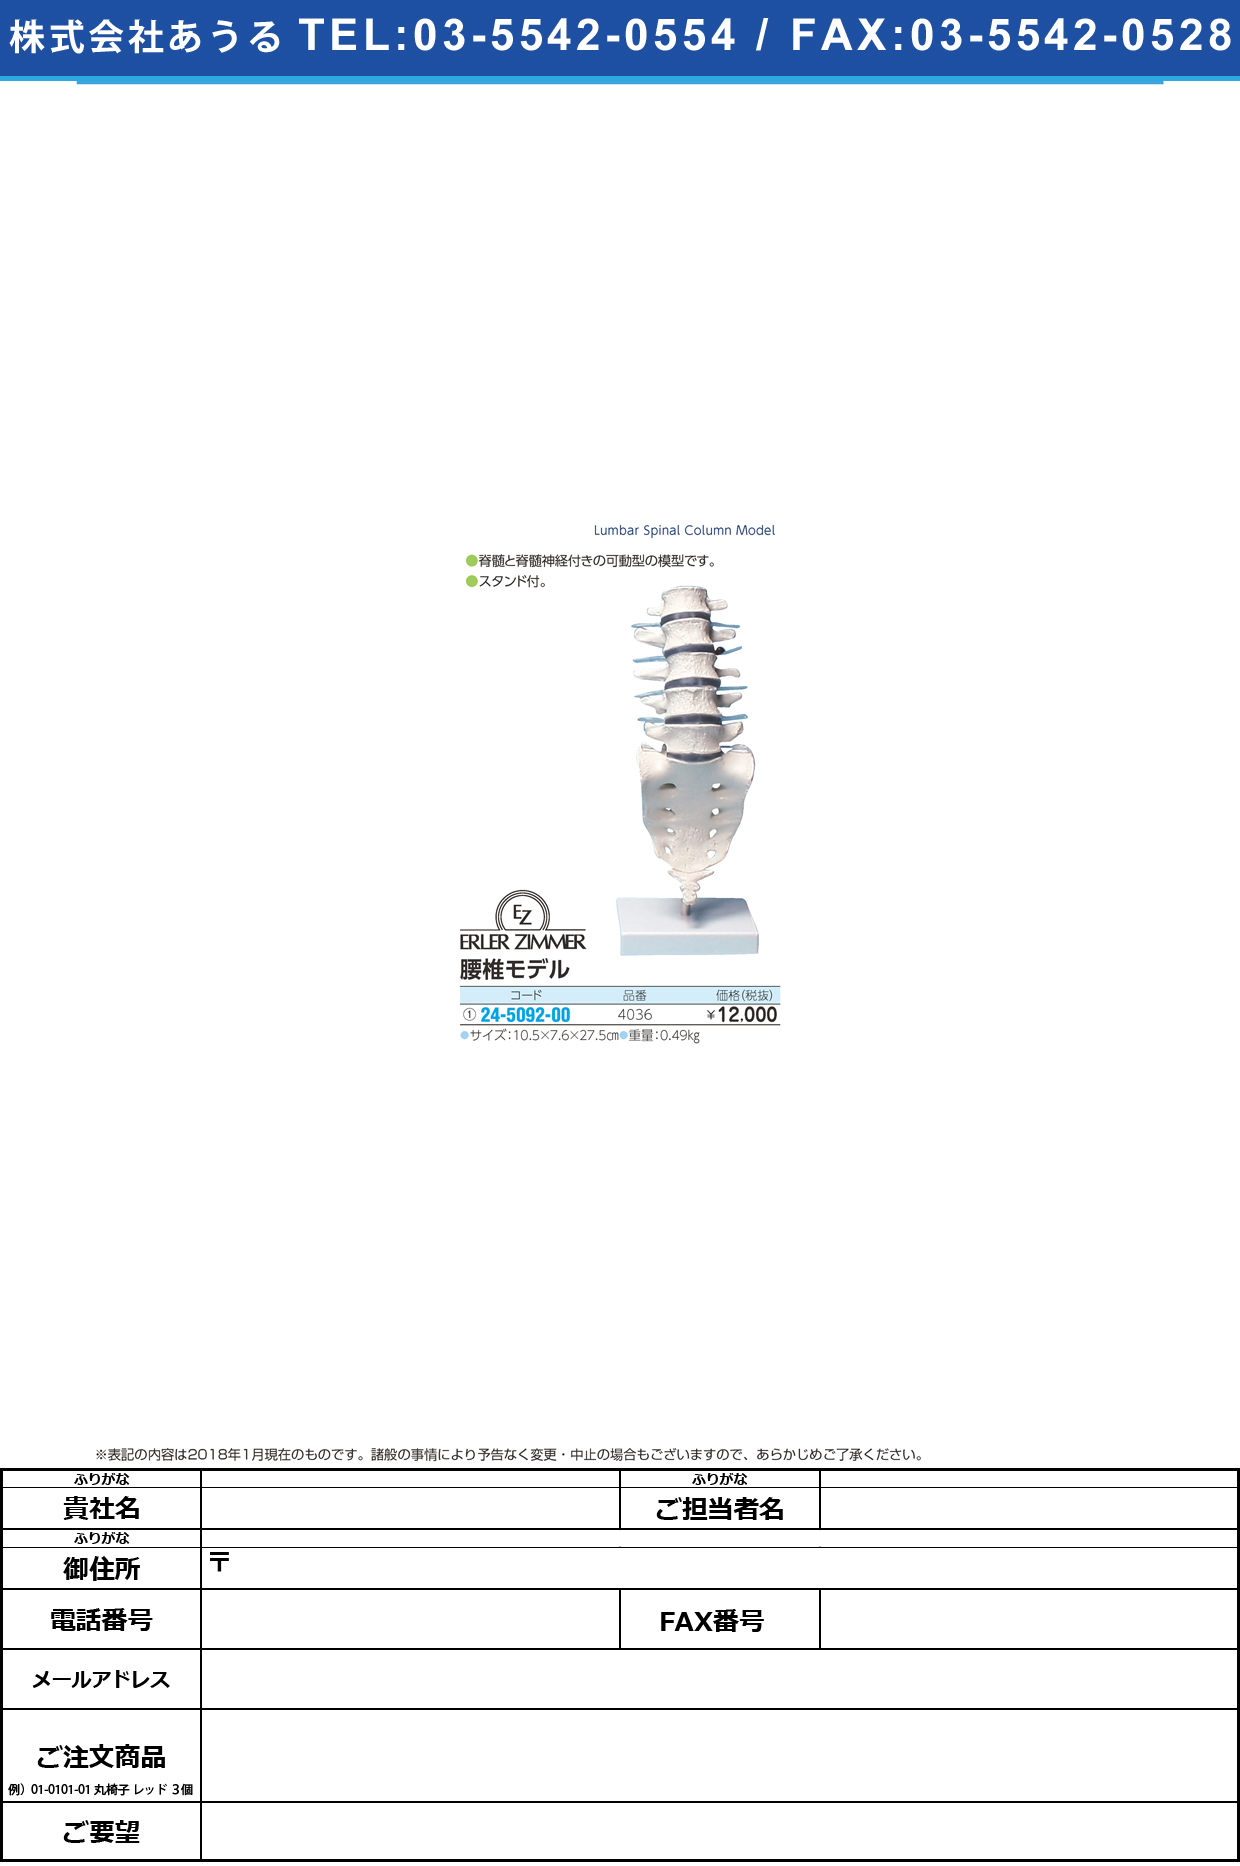 (24-5092-00)腰椎モデル 4036 ﾖｳﾂｲﾓﾃﾞﾙ(エルラージーマー社)【1個単位】【2019年カタログ商品】